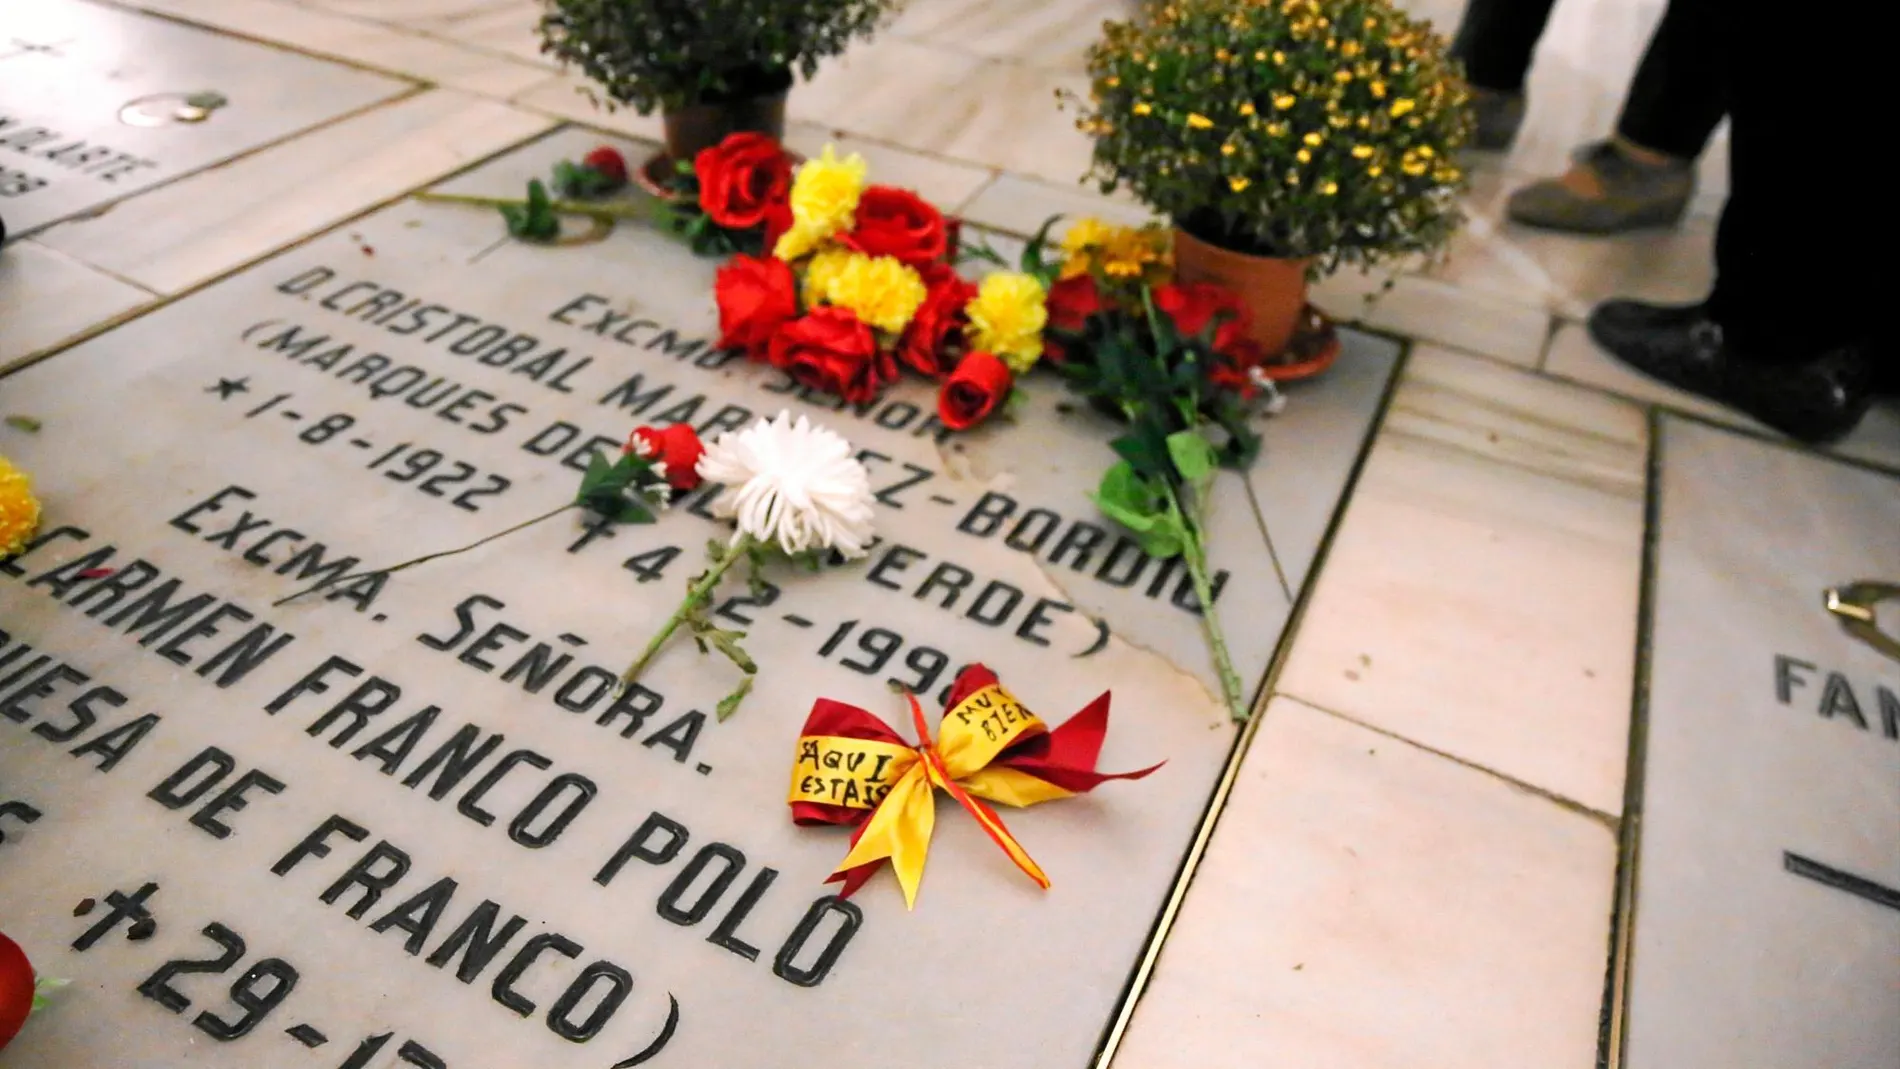 La tumba privada con la que cuenta la familia Francisco Franco en la cripta de la Almudena y donde está enterrada su hija / Foto: Cristina Bejarano